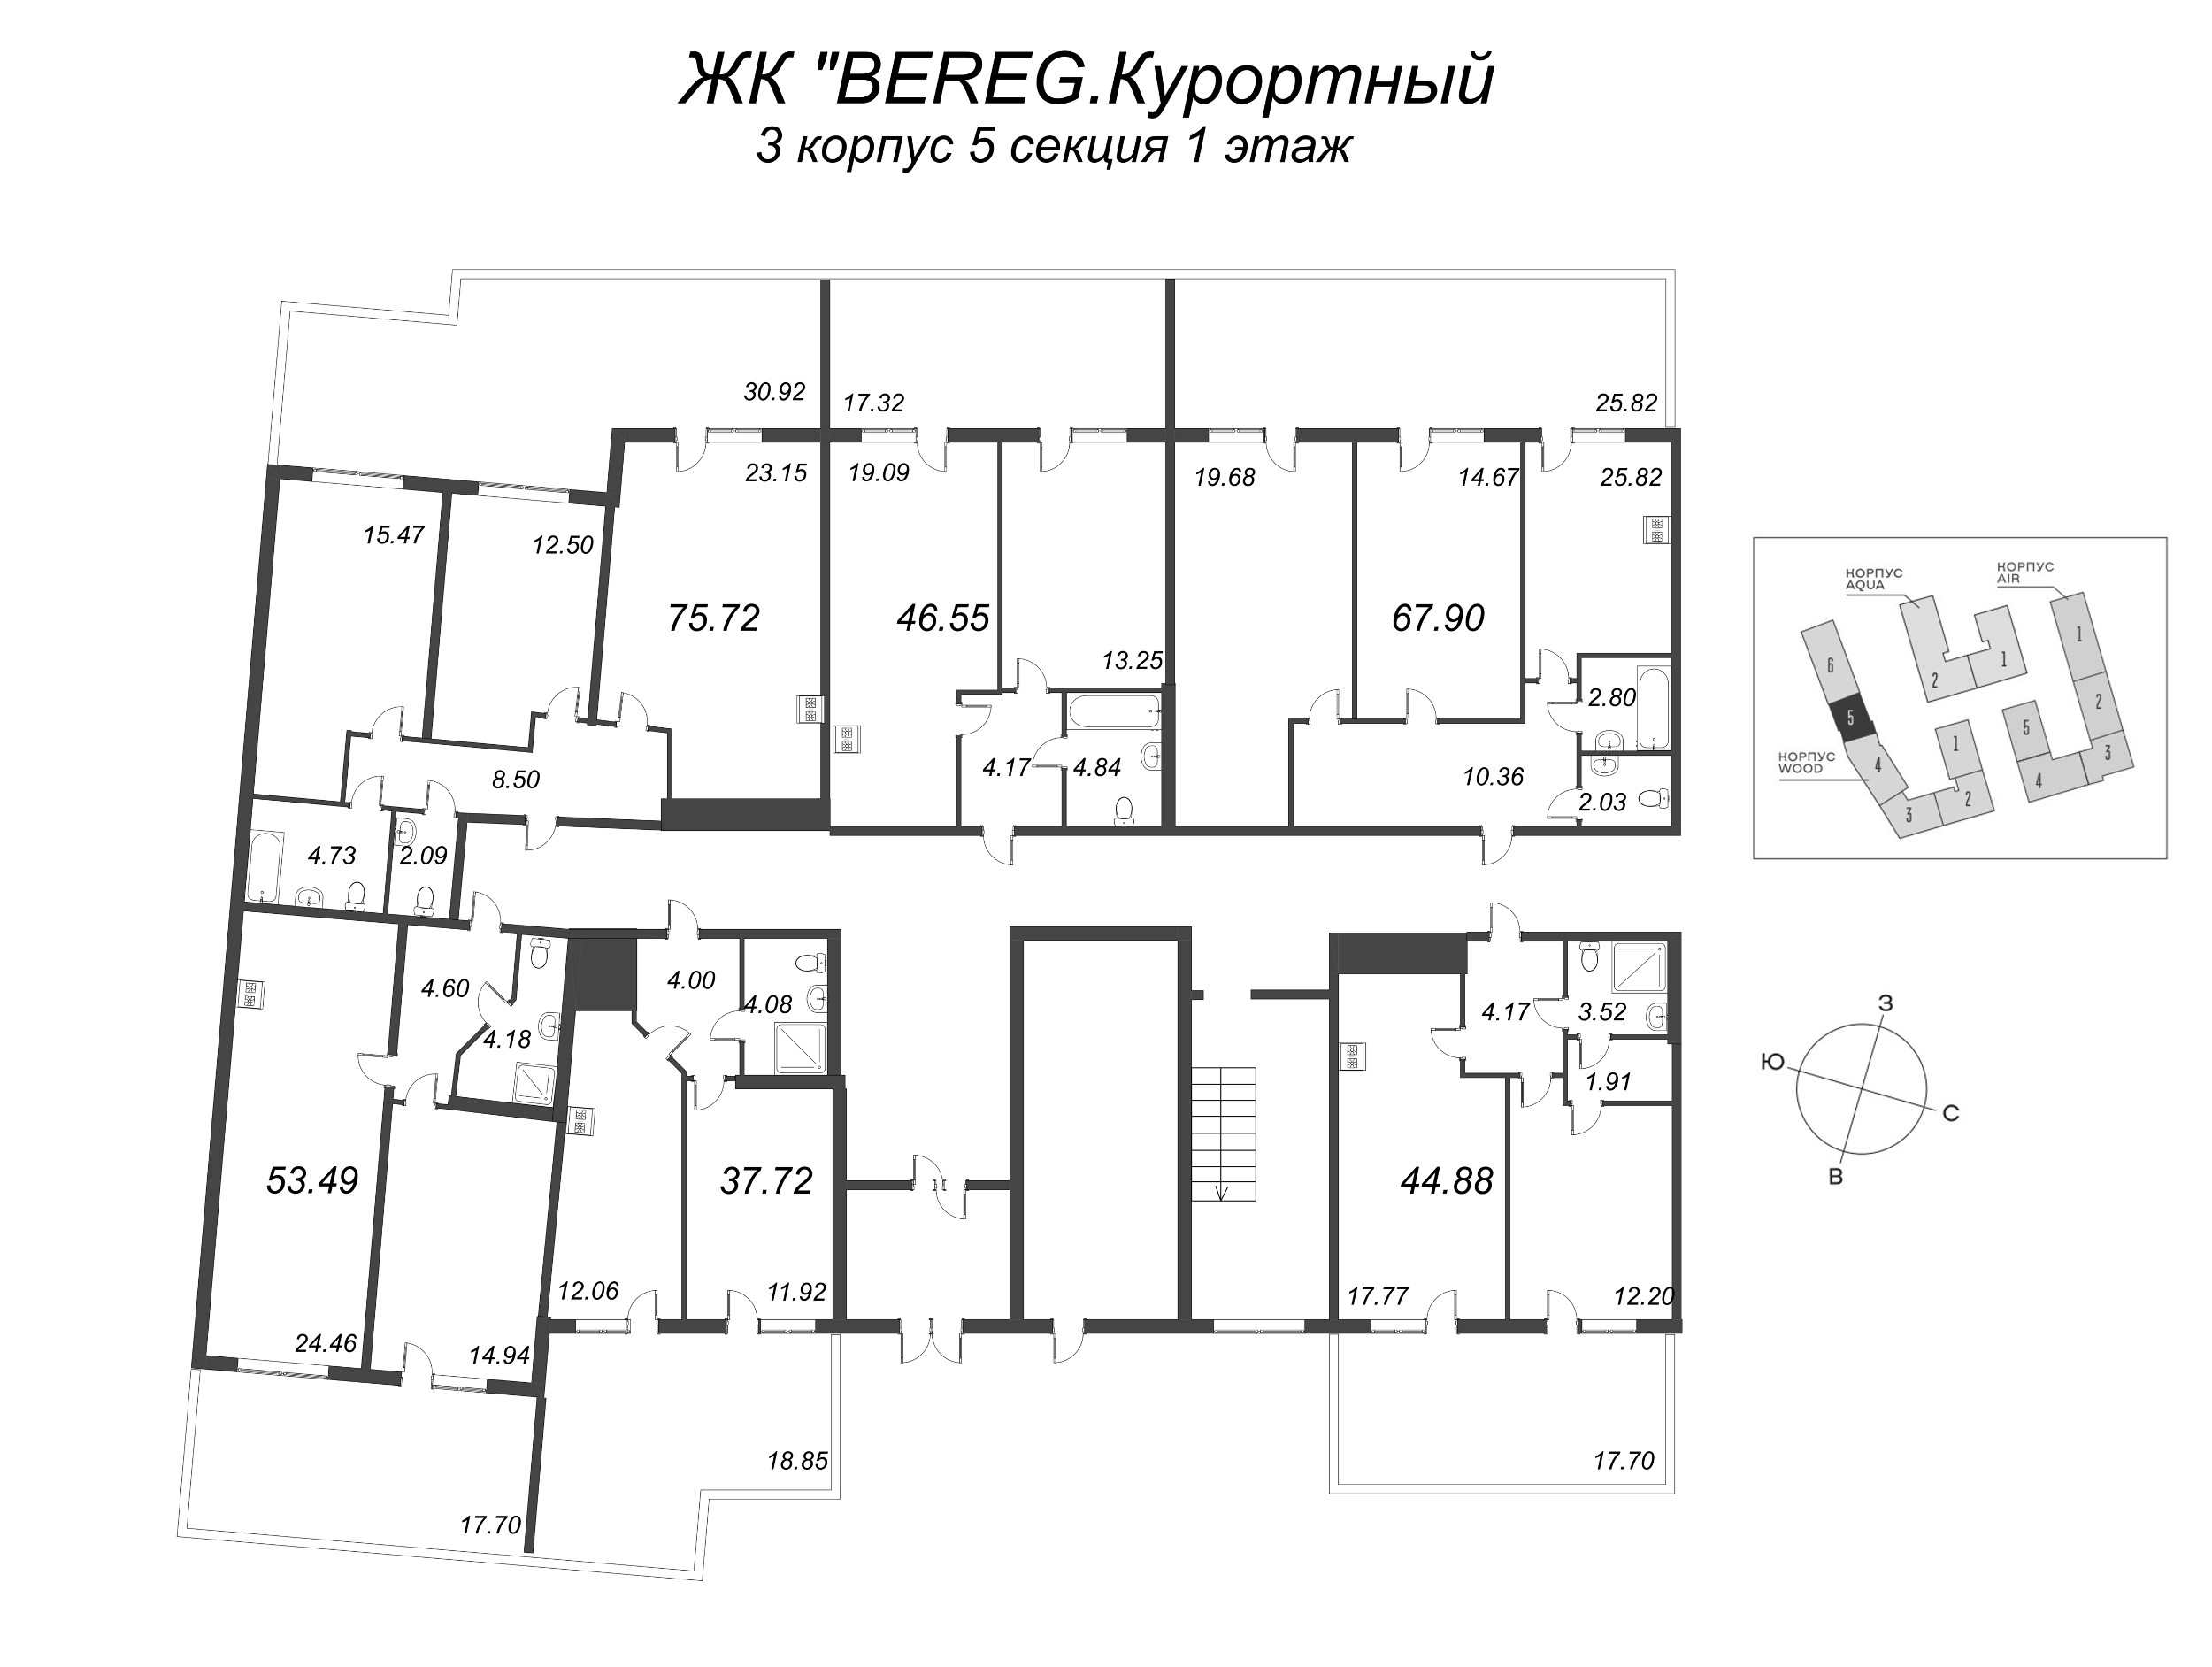 1-комнатная квартира, 37.72 м² в ЖК "Bereg. Курортный" - планировка этажа